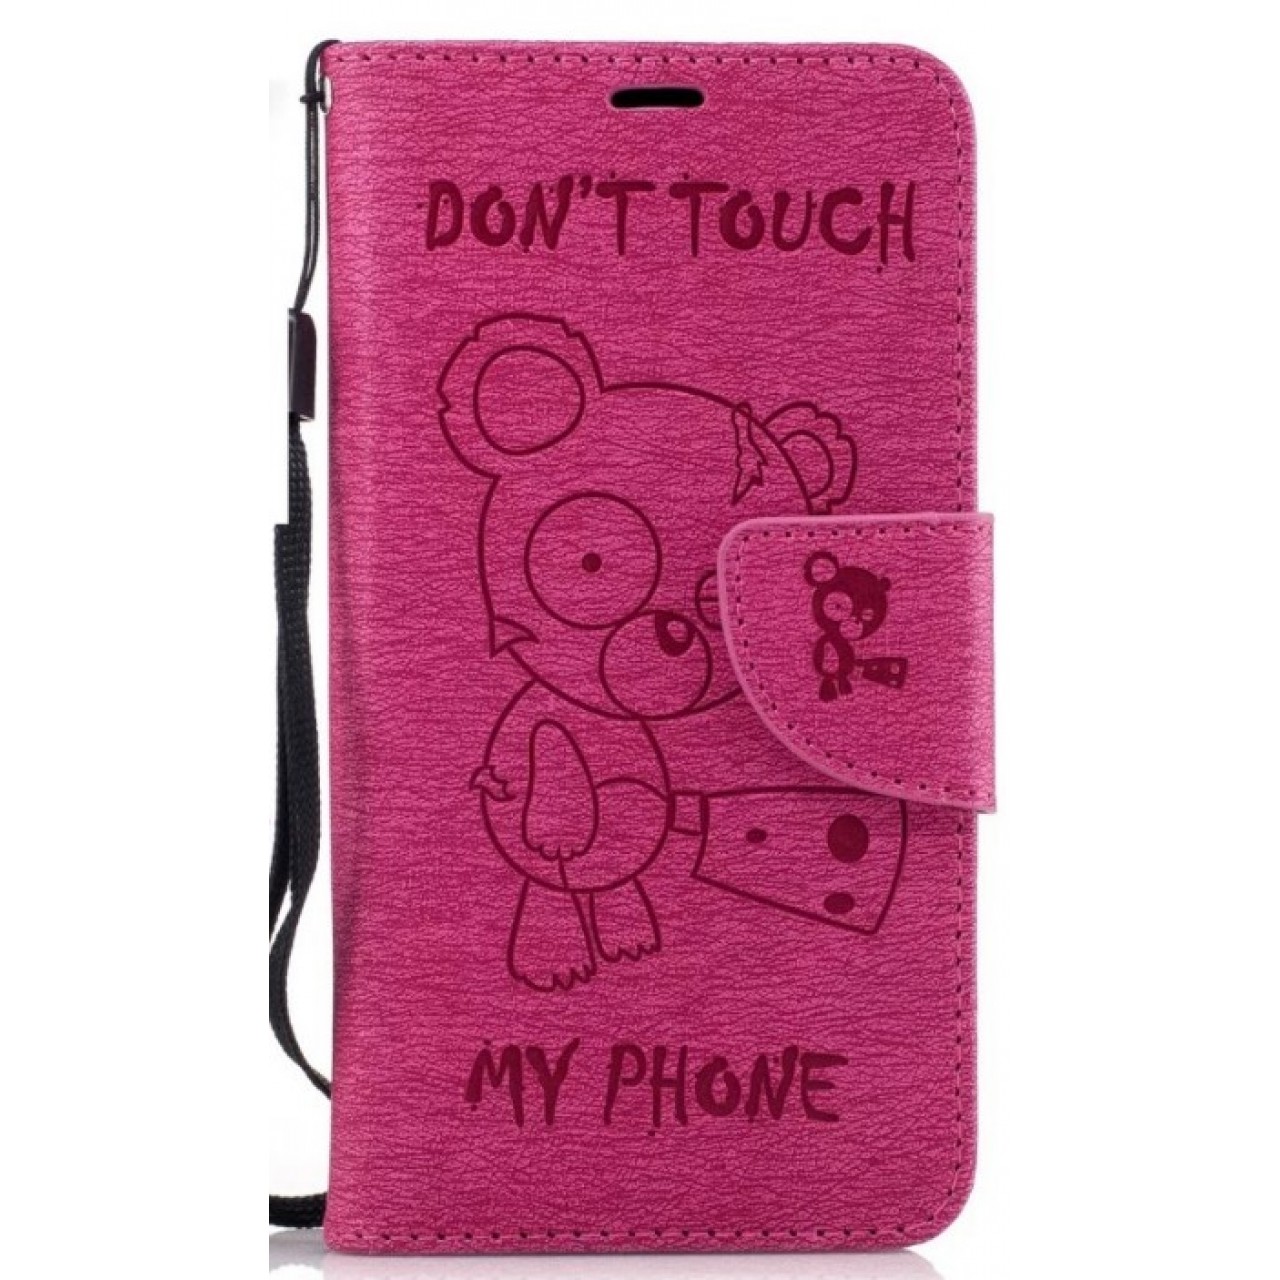 Θήκη Samsung Galaxy J3 Emerge / J3 Prime PU Leather Πορτοφόλι flip Don t touch my phone - 2398 - Φούξια - OEM